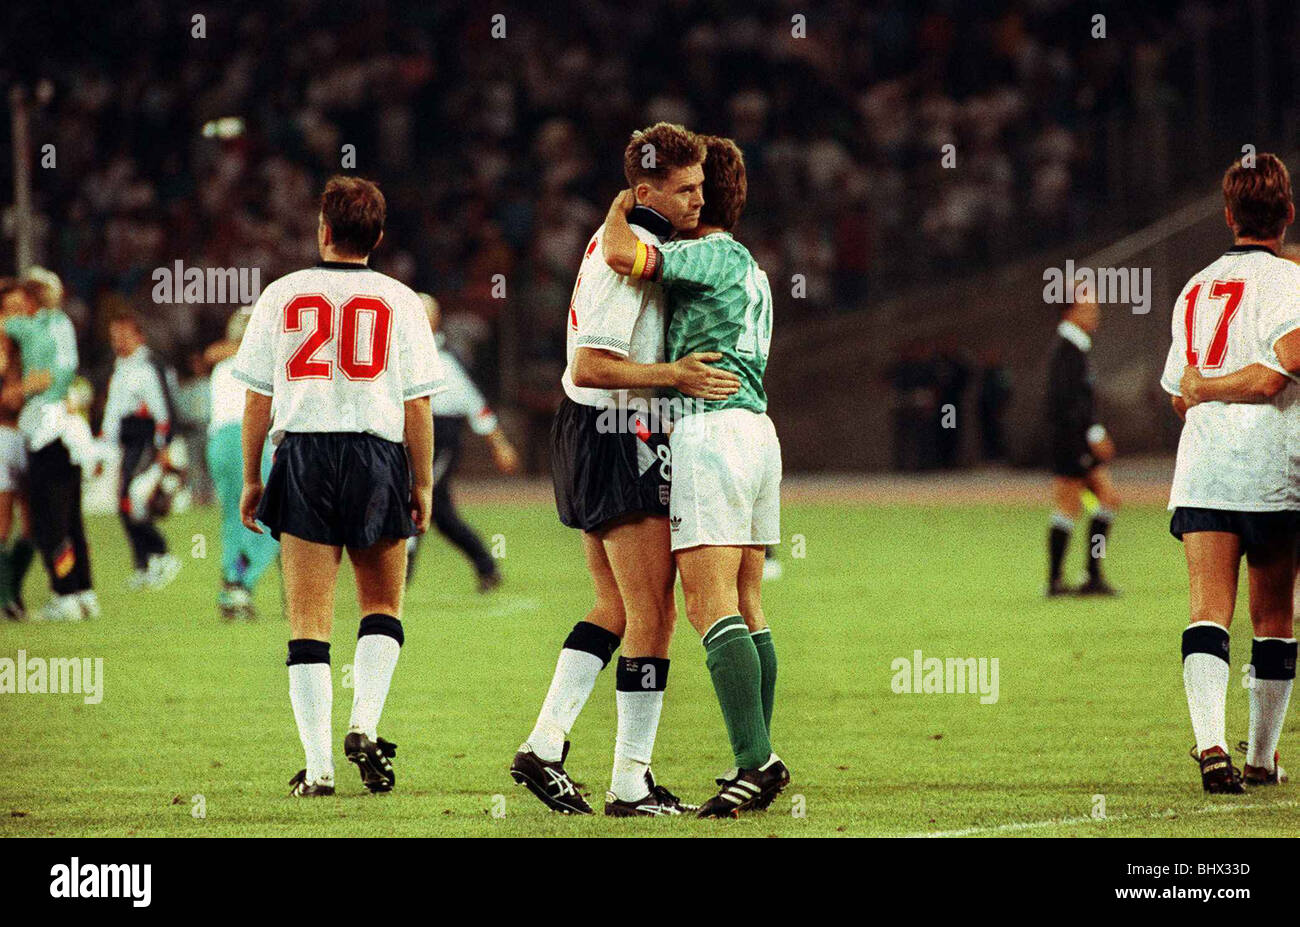 Welt Cup 1990 Semi Final England 1 Westdeutschland 1 Chris Waddle Fußball  ist getröstet und von Lothar Matthäus W Deutschlands nach dem Spiel in  welchem Waddle umarmt einen Elfmeter im 1990 WM